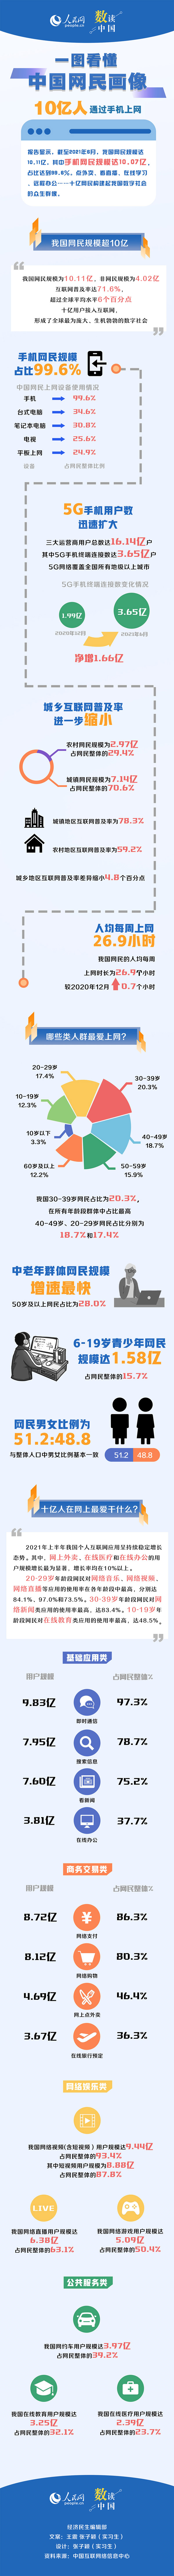 手机网民规模超10亿！一图看懂中国网民画像